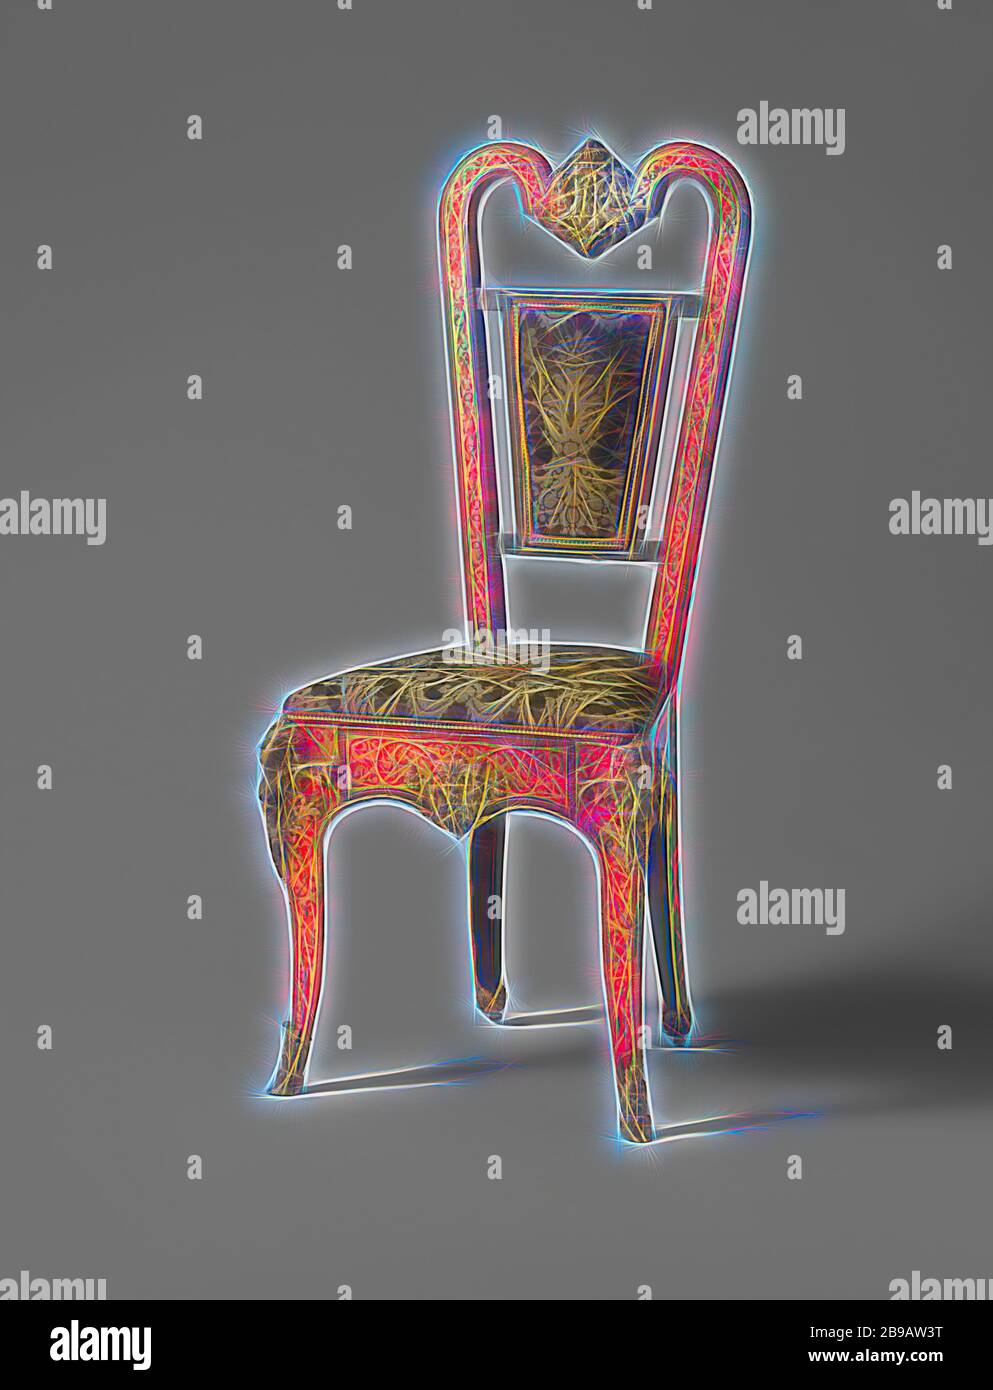 Chaise en placage ébène avec marqueterie de Boulle, chaise en placage ébène avec marqueterie de Boulle. La chaise est estampillée W., anonyme, 1800 - 1900, ébène (bois), bois (matériel végétal), laiton (alliage), dorure (matériau), soie, dorure, h 112.5 cm × l 51 cm × p 41 cm × h 51 cm × l 46 cm × d 35 cm, réimaginée par Gibon, design chaleureux et joyeux, lumineux et radiance des rayons lumineux. L'art classique réinventé avec une touche moderne. Photographie inspirée par le futurisme, embrassant l'énergie dynamique de la technologie moderne, le mouvement, la vitesse et révolutionnez la culture. Banque D'Images